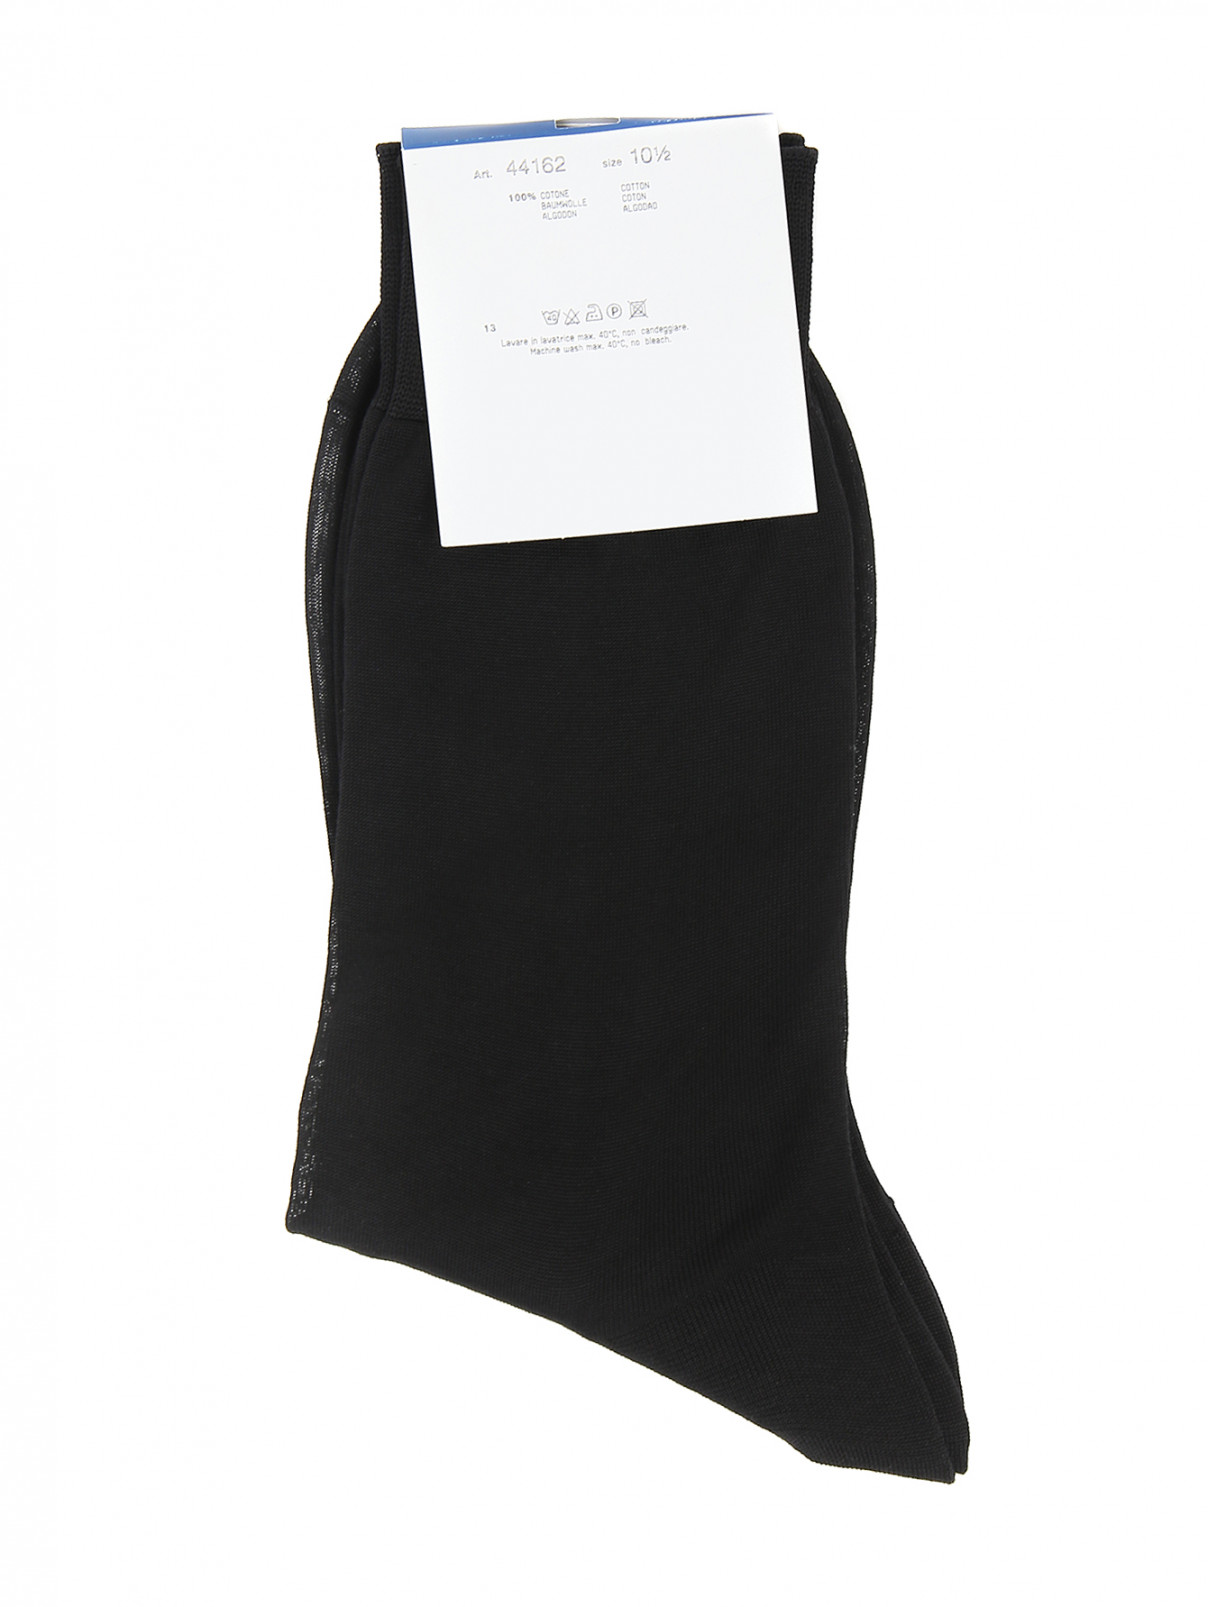 Носки из хлопка Nero Perla  –  Общий вид  – Цвет:  Черный